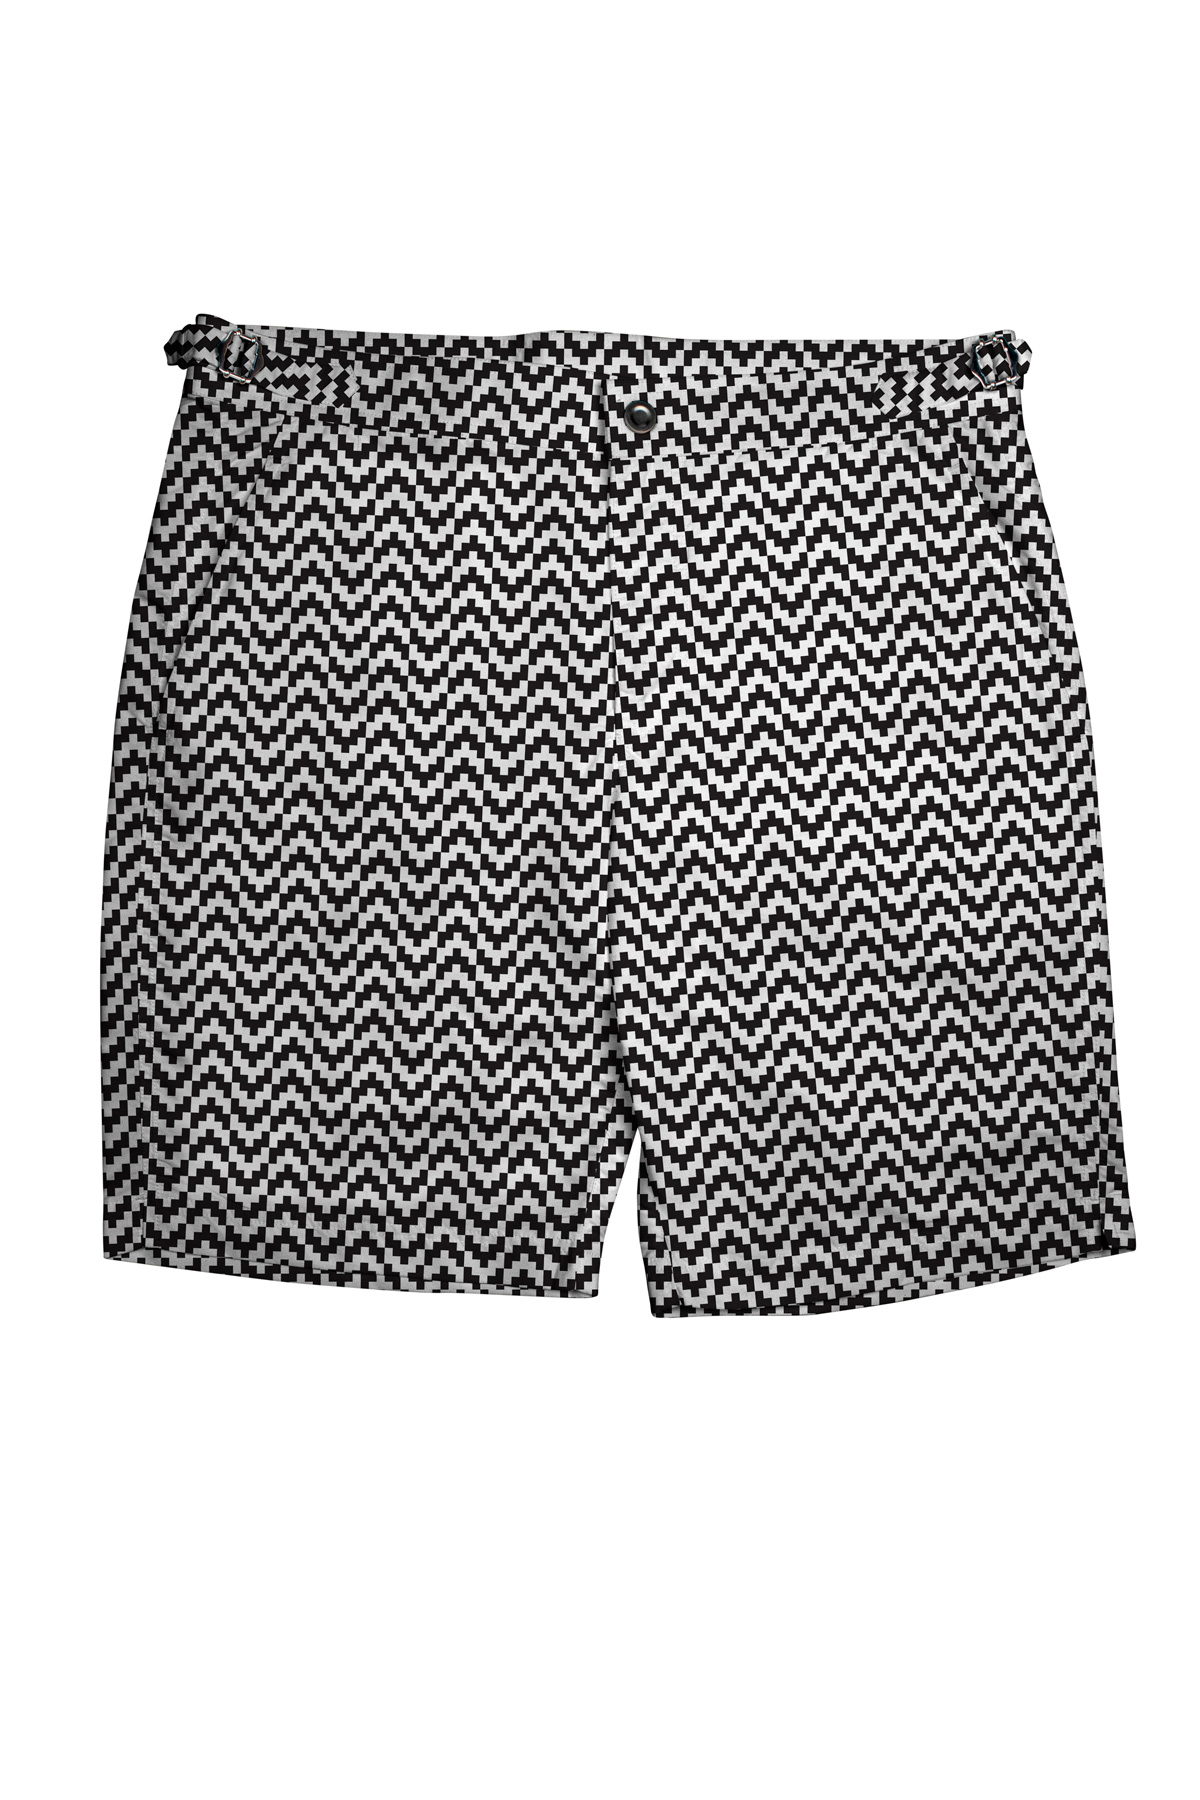 Black & White Zig-Zag Swim Shorts